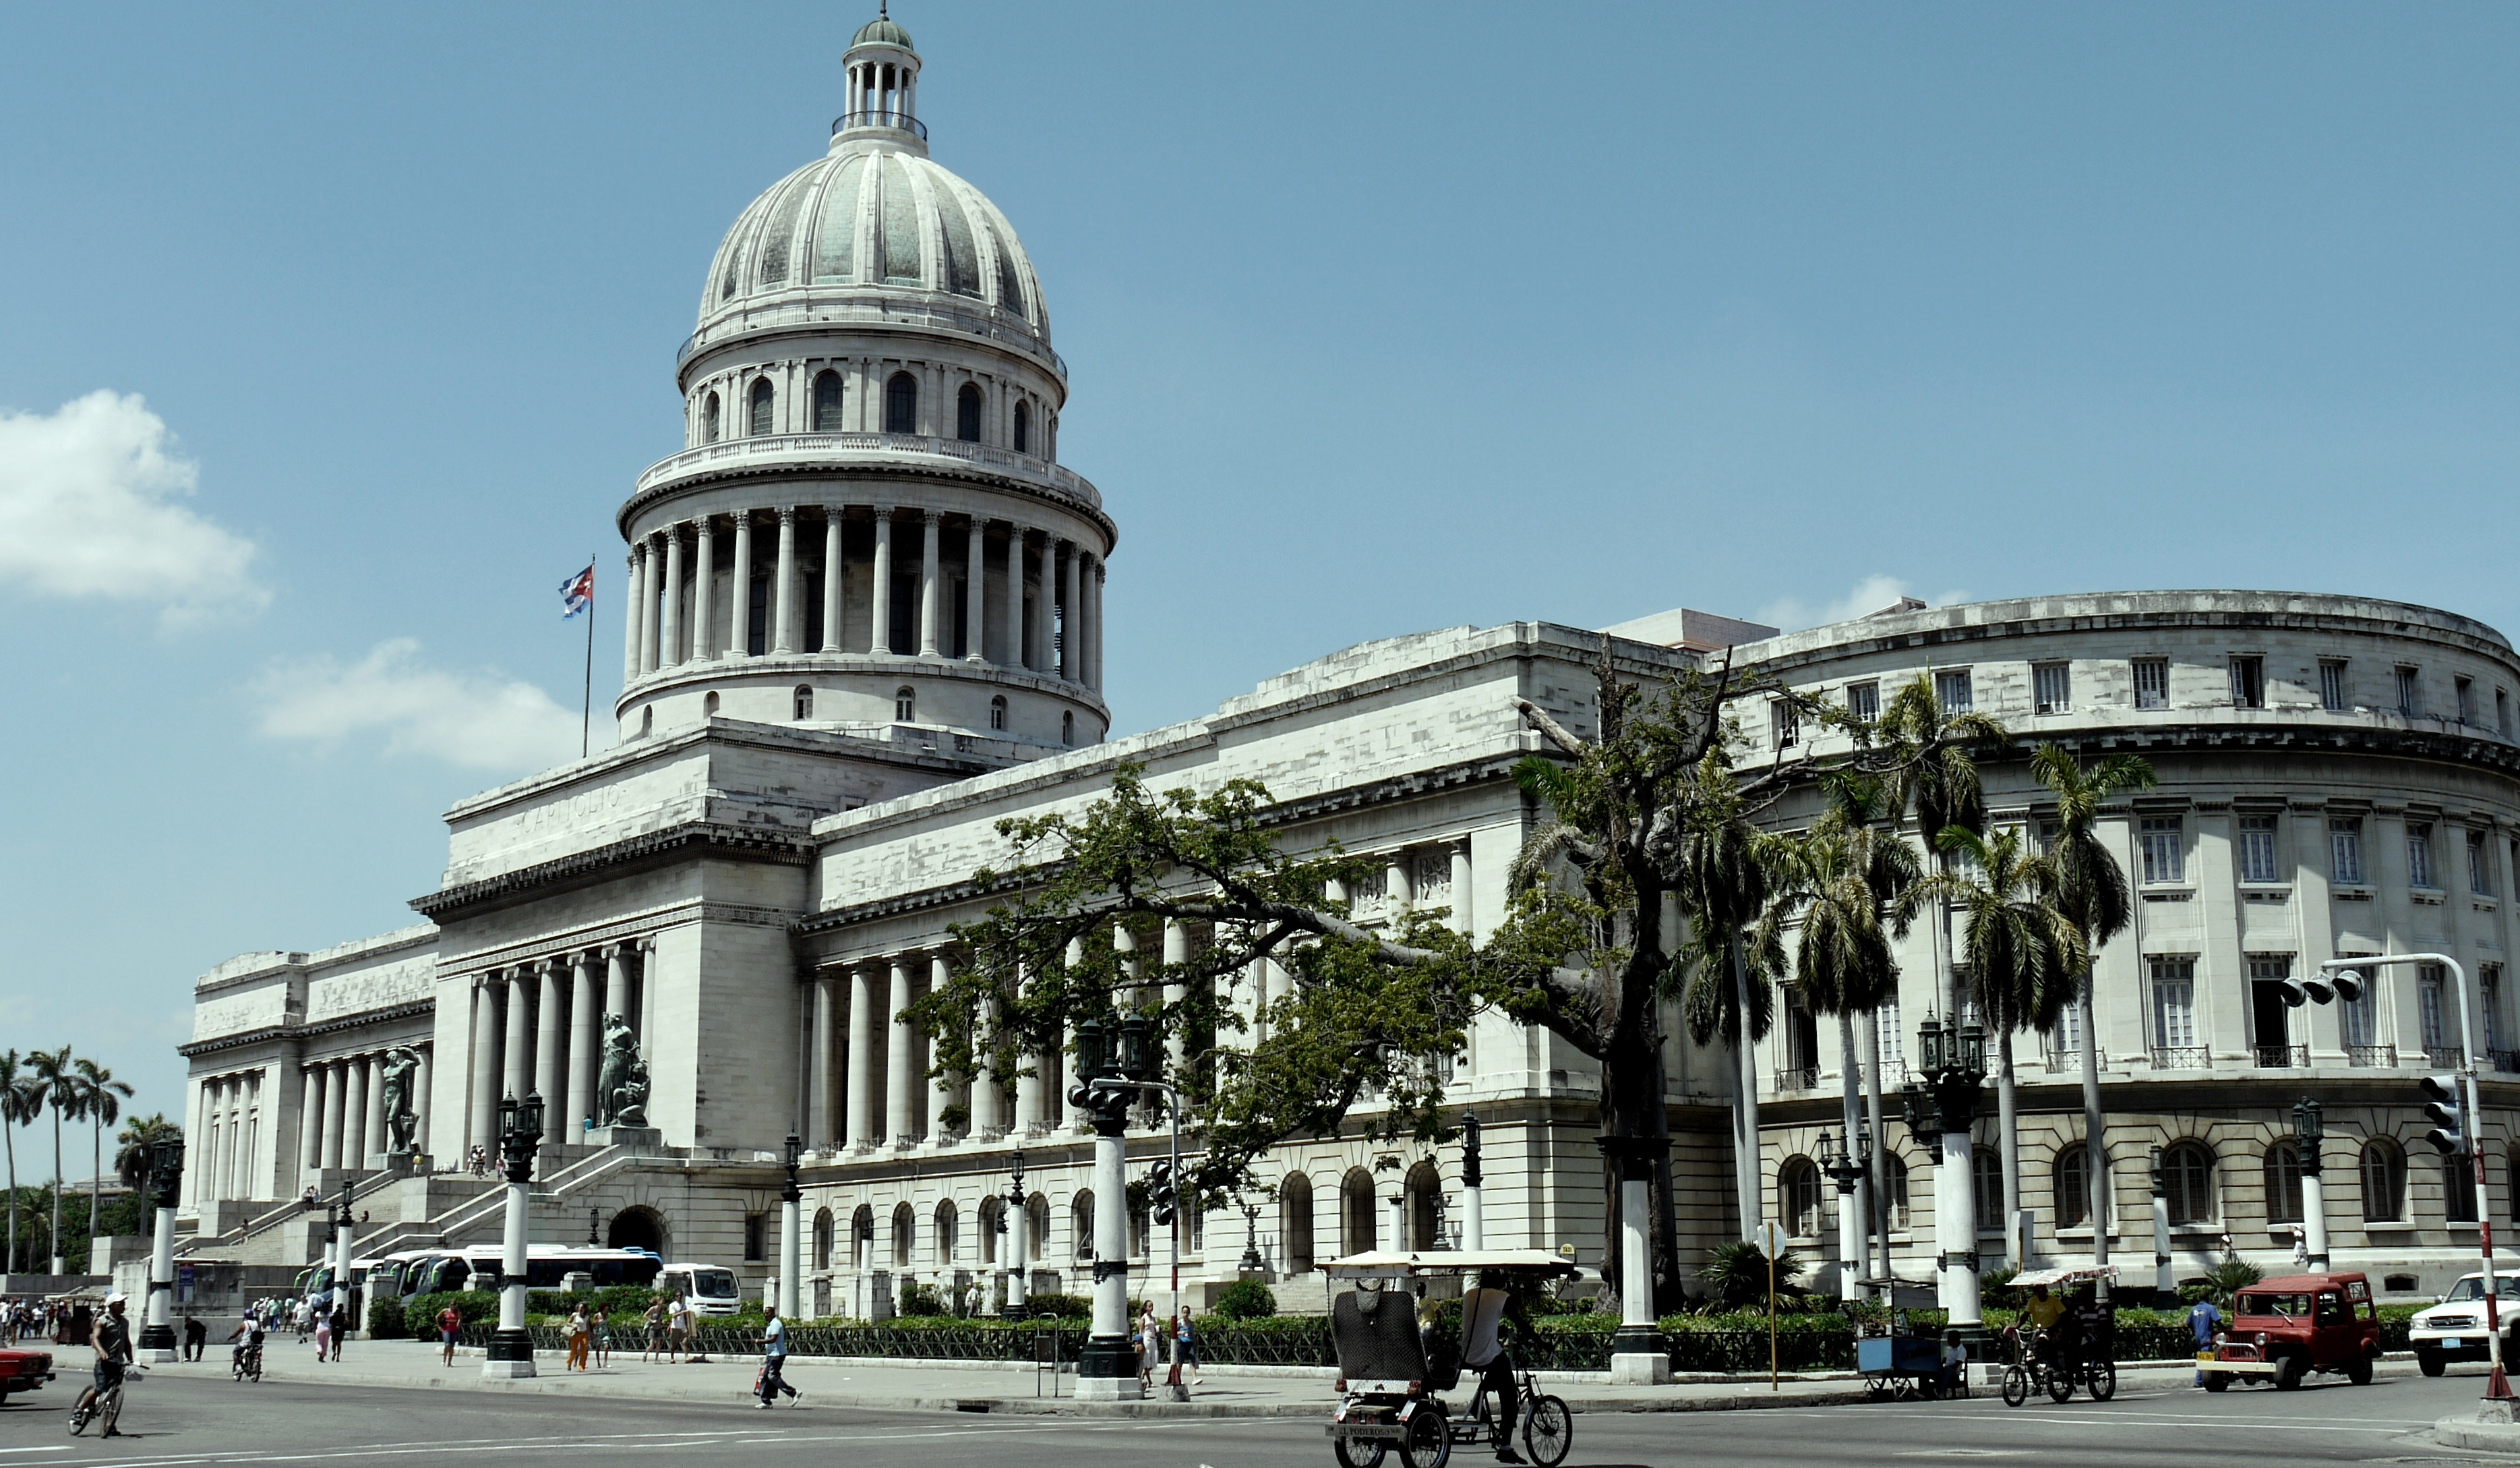 Inversión extranjera en Cuba